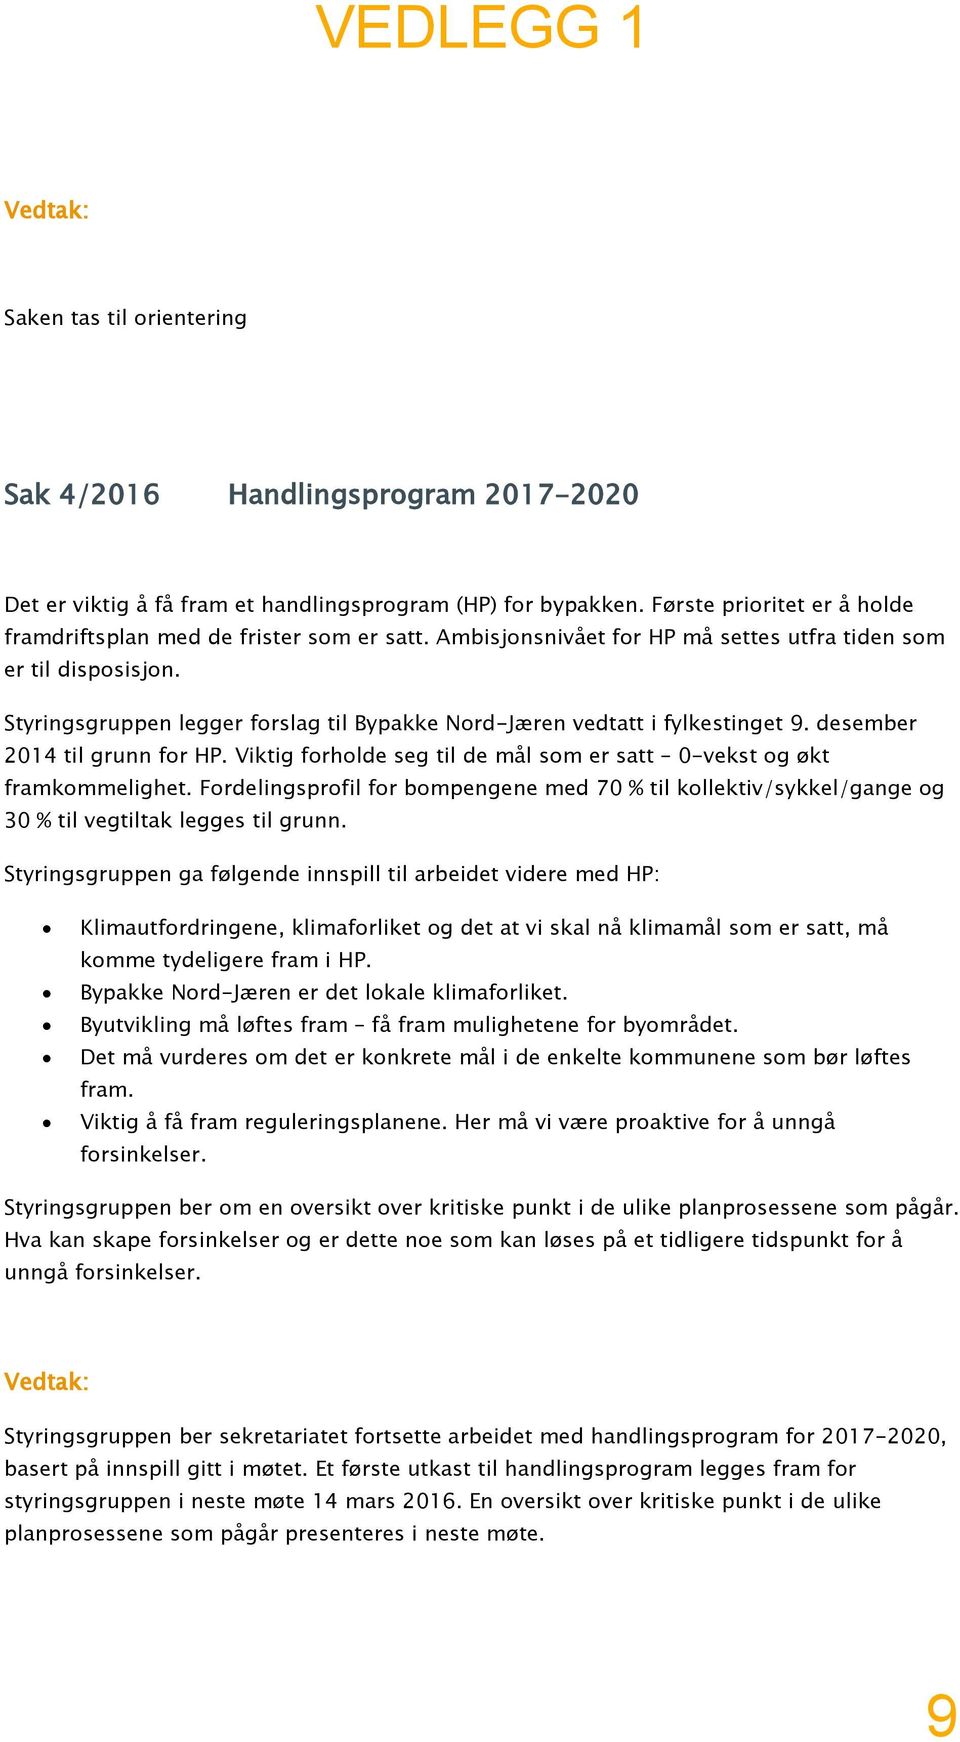 Styringsgruppen legger forslag til Bypakke Nord-Jæren vedtatt i fylkestinget 9. desember 2014 til grunn for HP. Viktig forholde seg til de mål som er satt 0-vekst og økt framkommelighet.